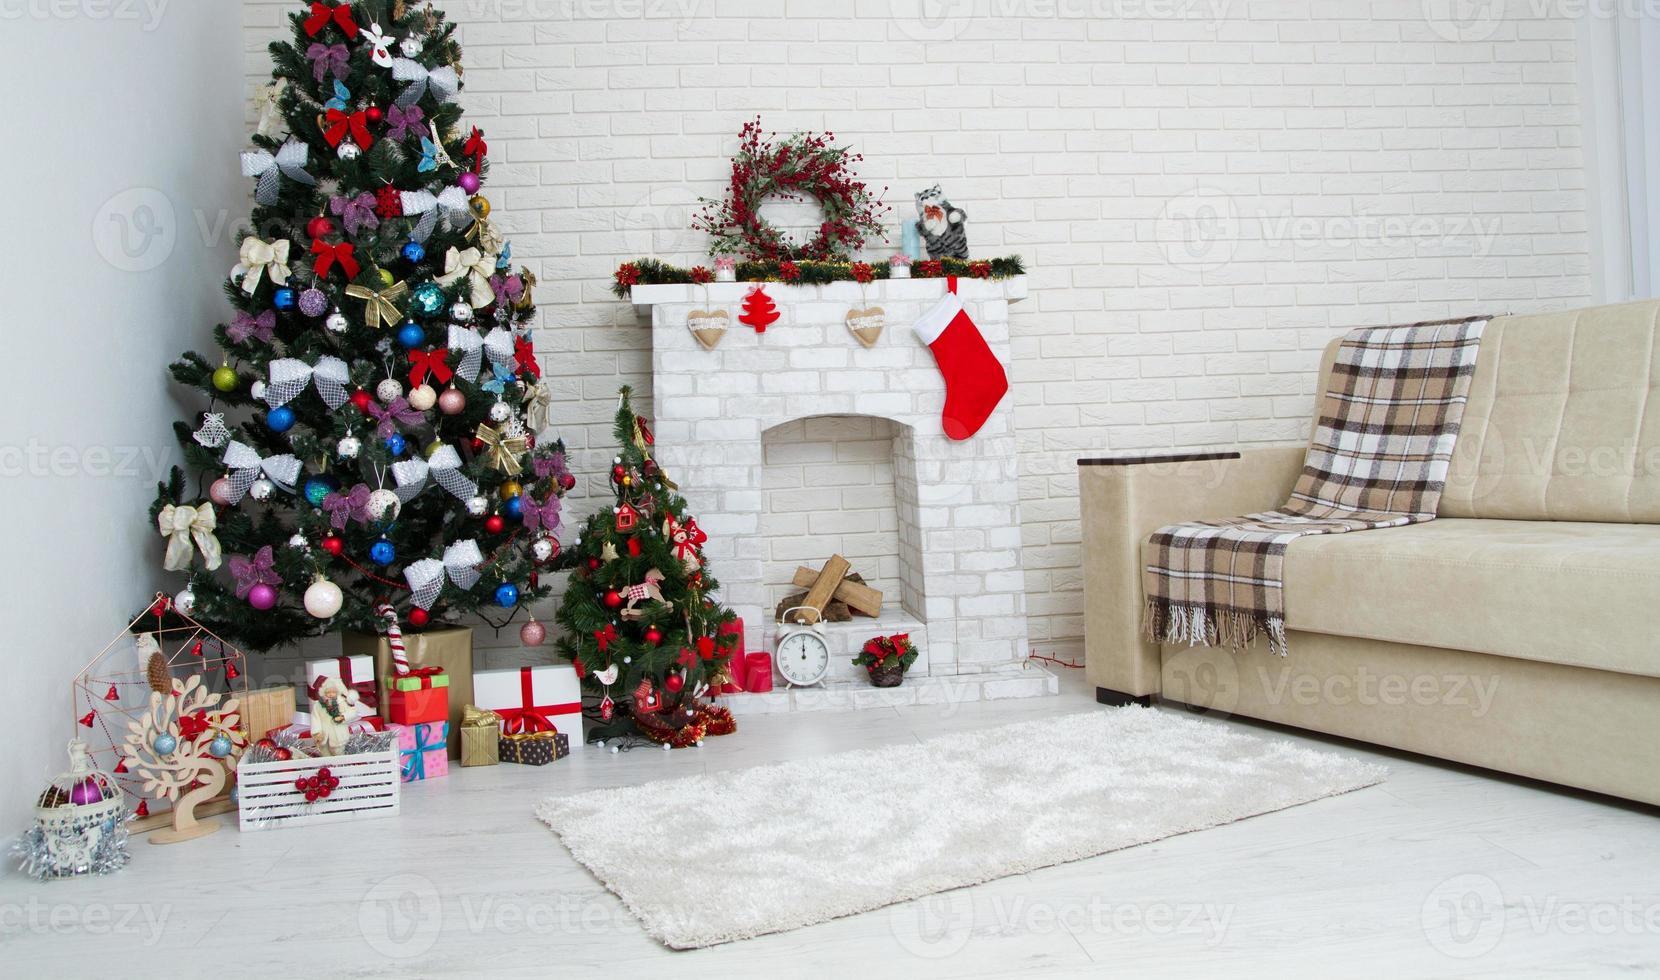 kerst met een kerstboom en cadeautjes eronder - moderne klassieke stijl, nieuwjaarsconcept Stockfoto